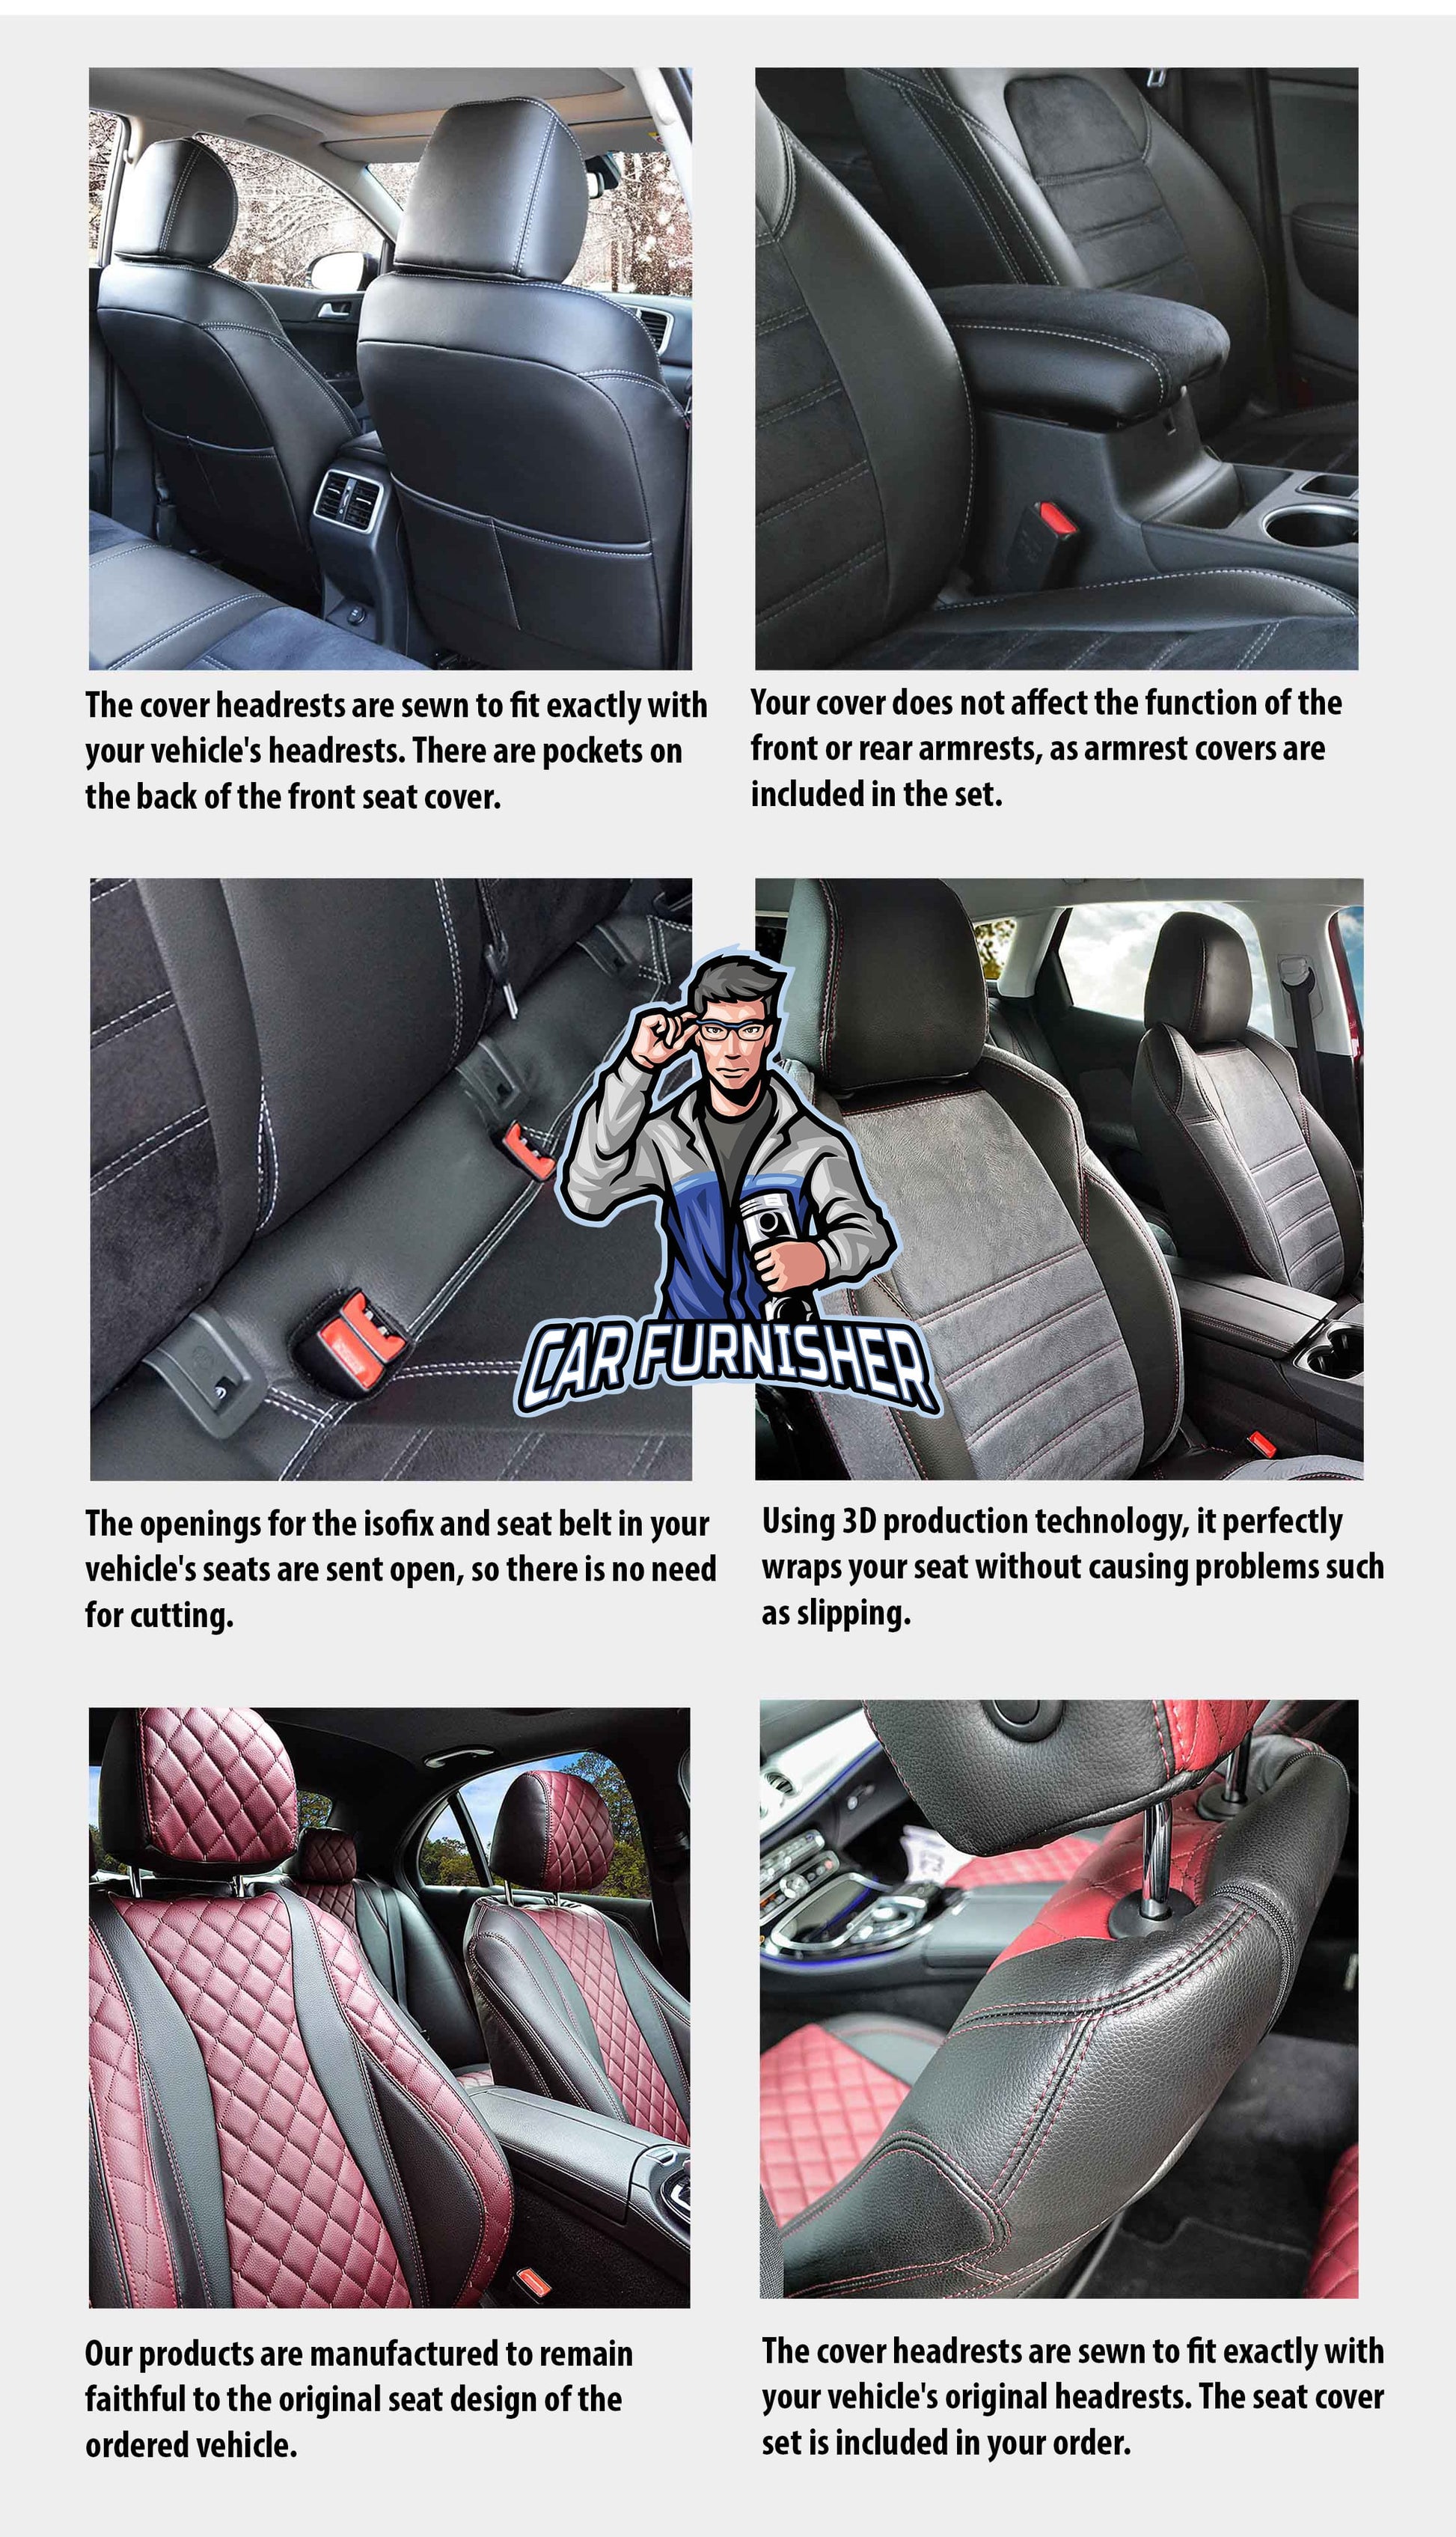 Skoda Rapid Seat Covers Camouflage Waterproof Design Arctic Camo Waterproof Fabric